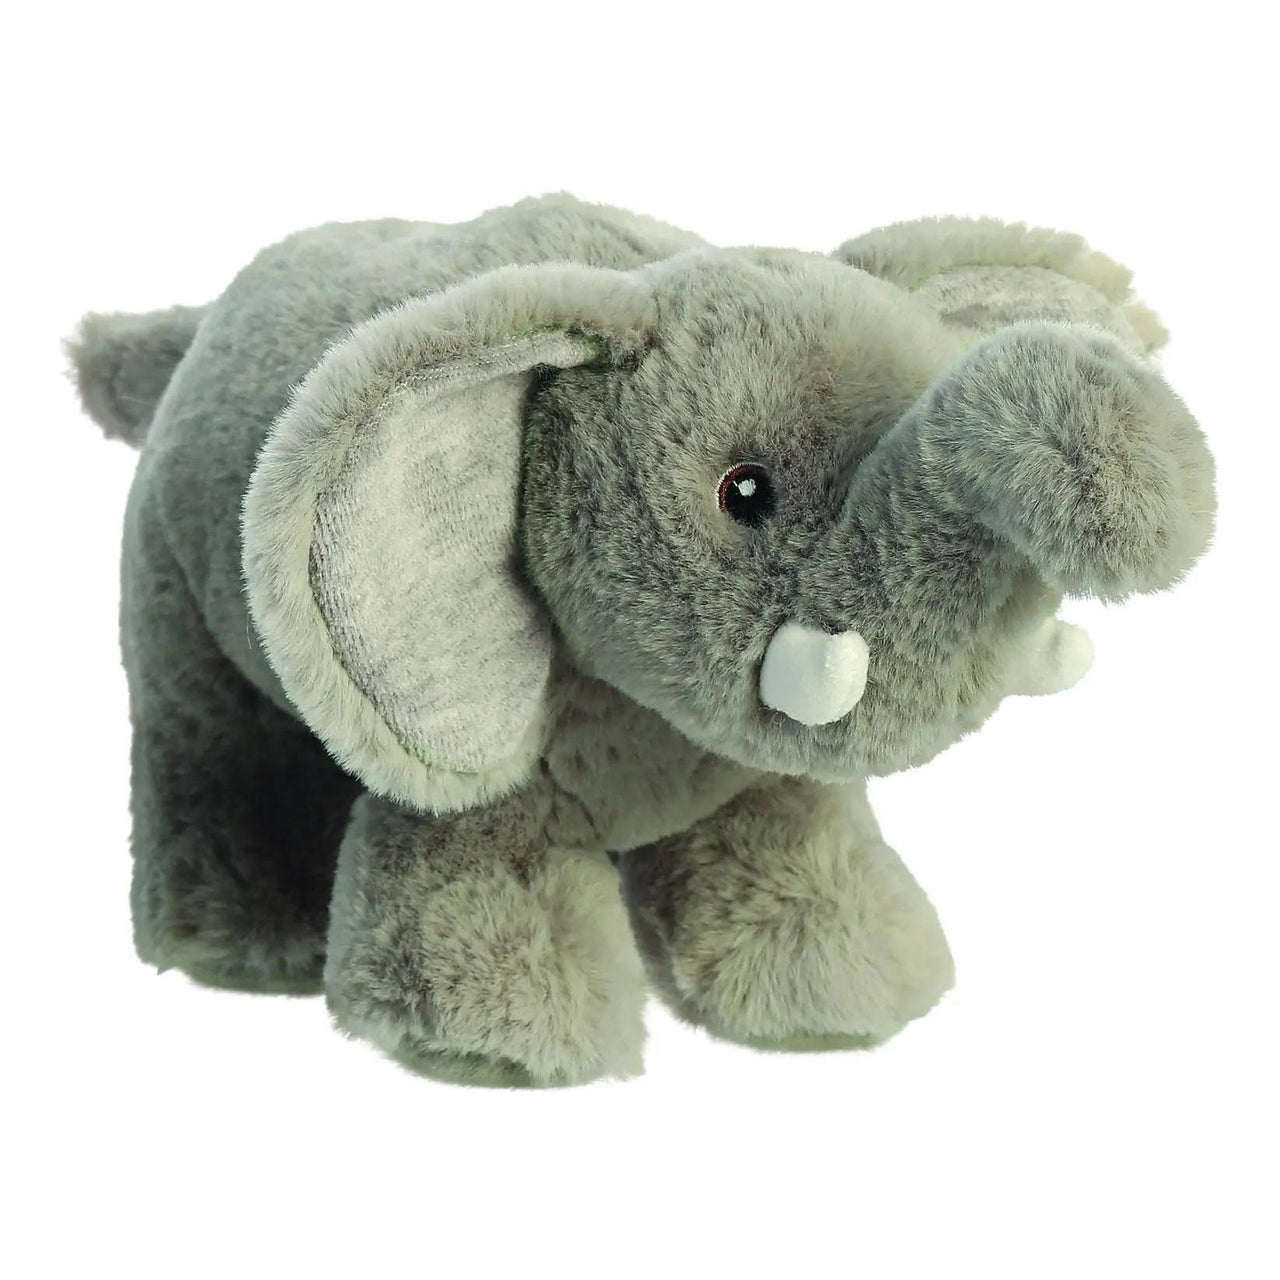 Eco Nation Elephant 10.5" Plush Toy Aurora